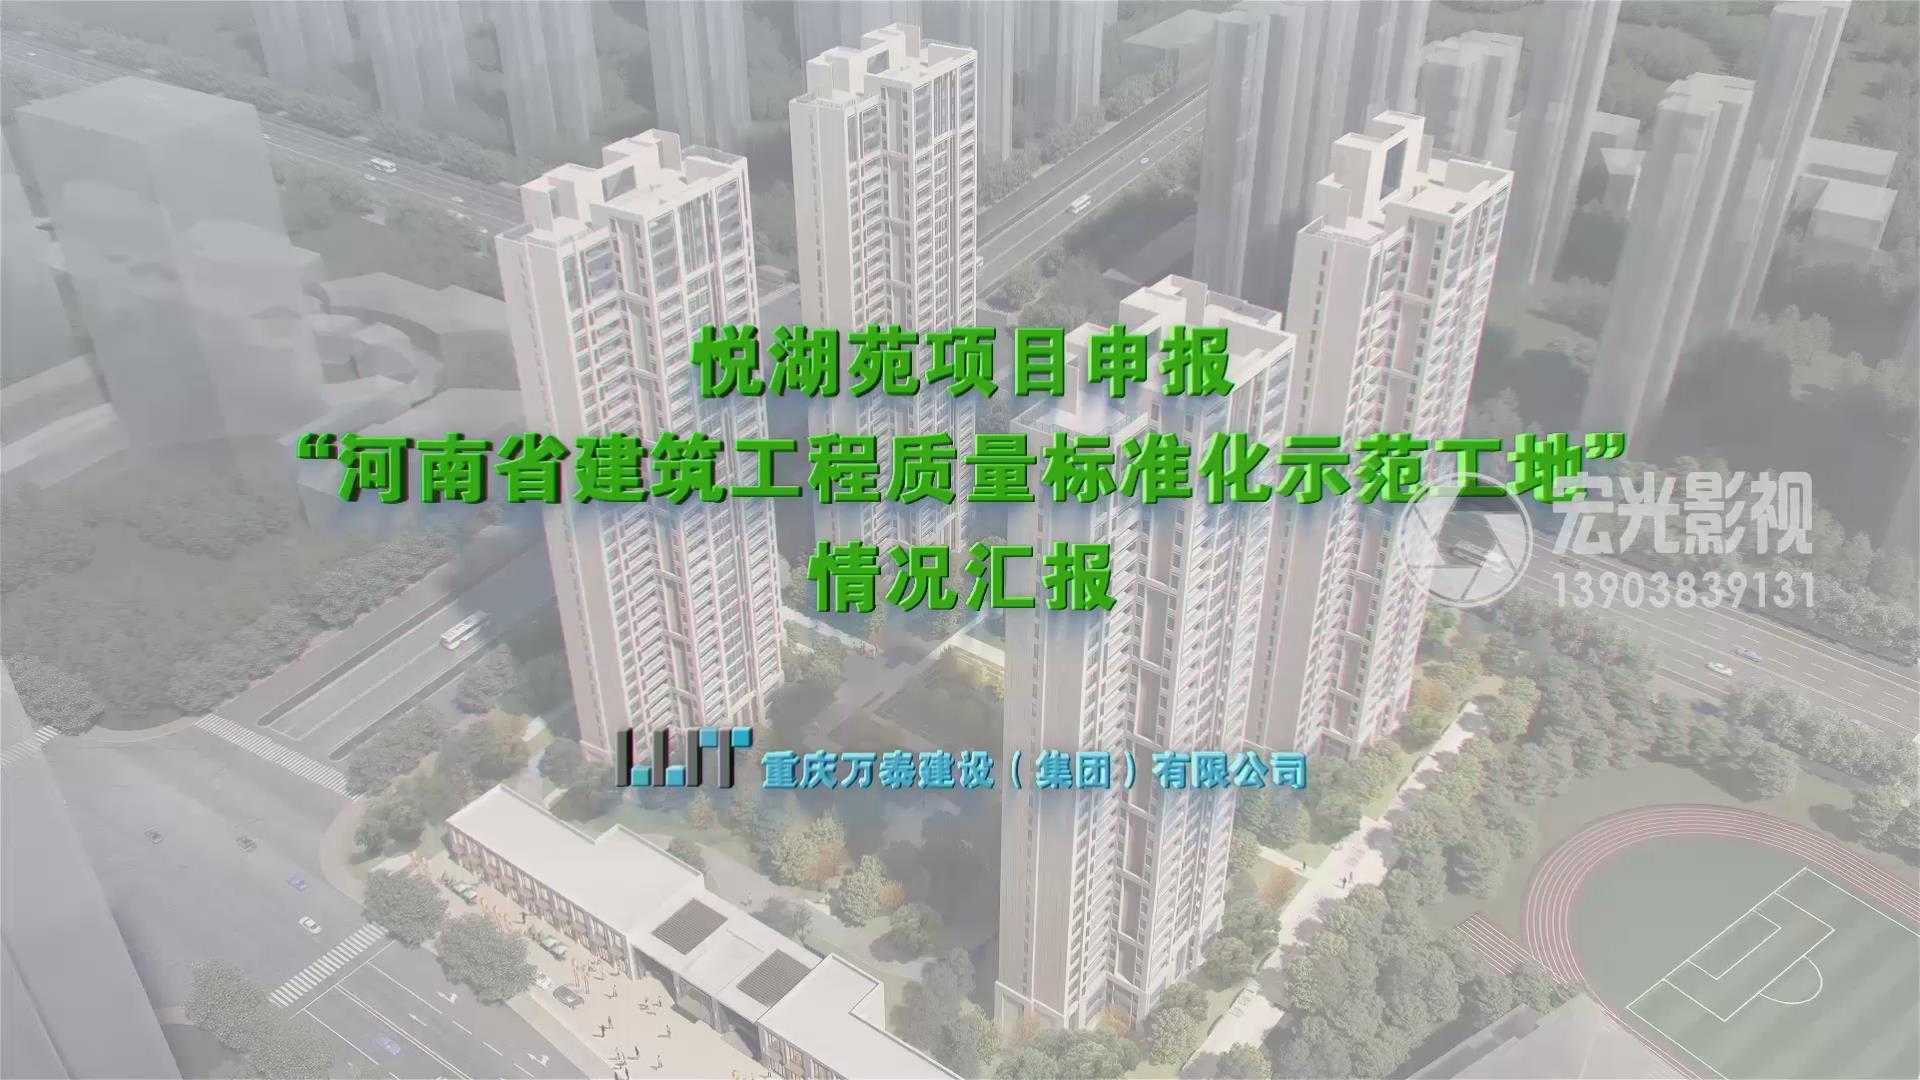 悦湖苑河南省建筑工程质量标准化示范工地